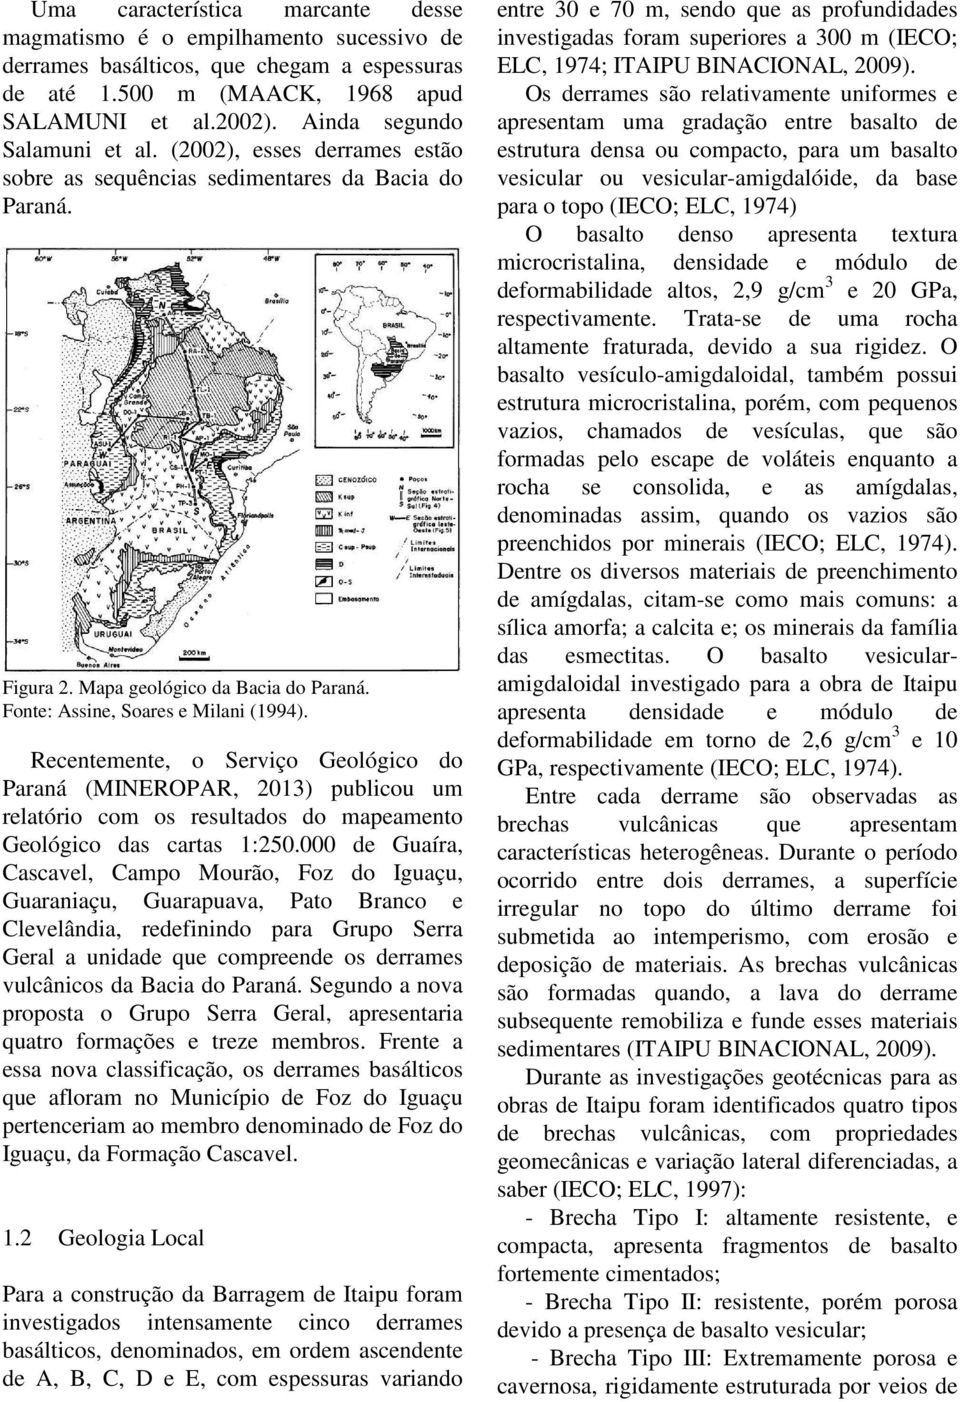 Recentemente, o Serviço Geológico do Paraná (MINEROPAR, 2013) publicou um relatório com os resultados do mapeamento Geológico das cartas 1:250.